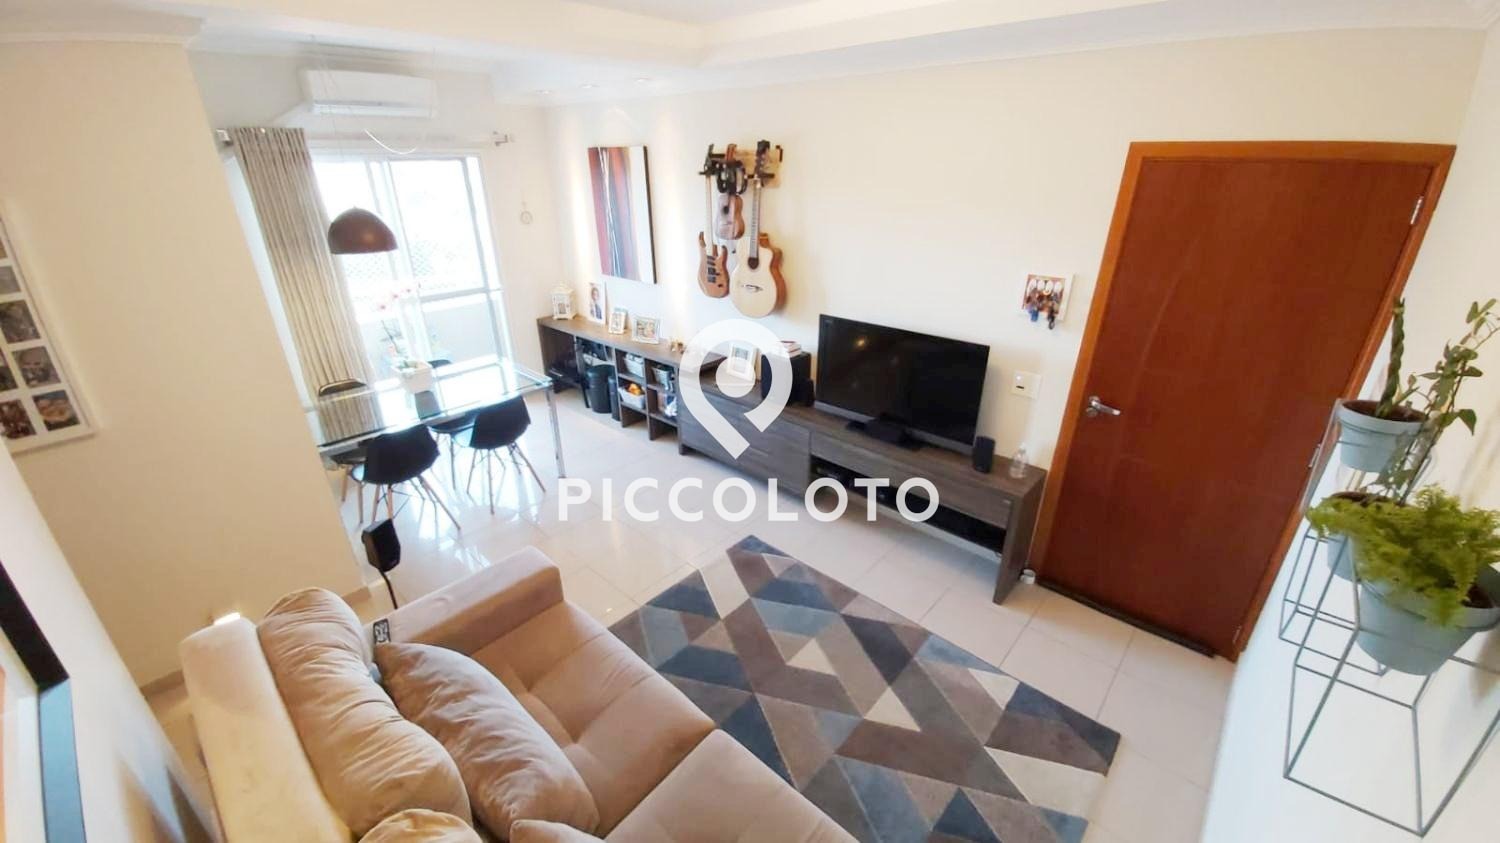 Piccoloto -Apartamento à venda no Parque Itália em Campinas